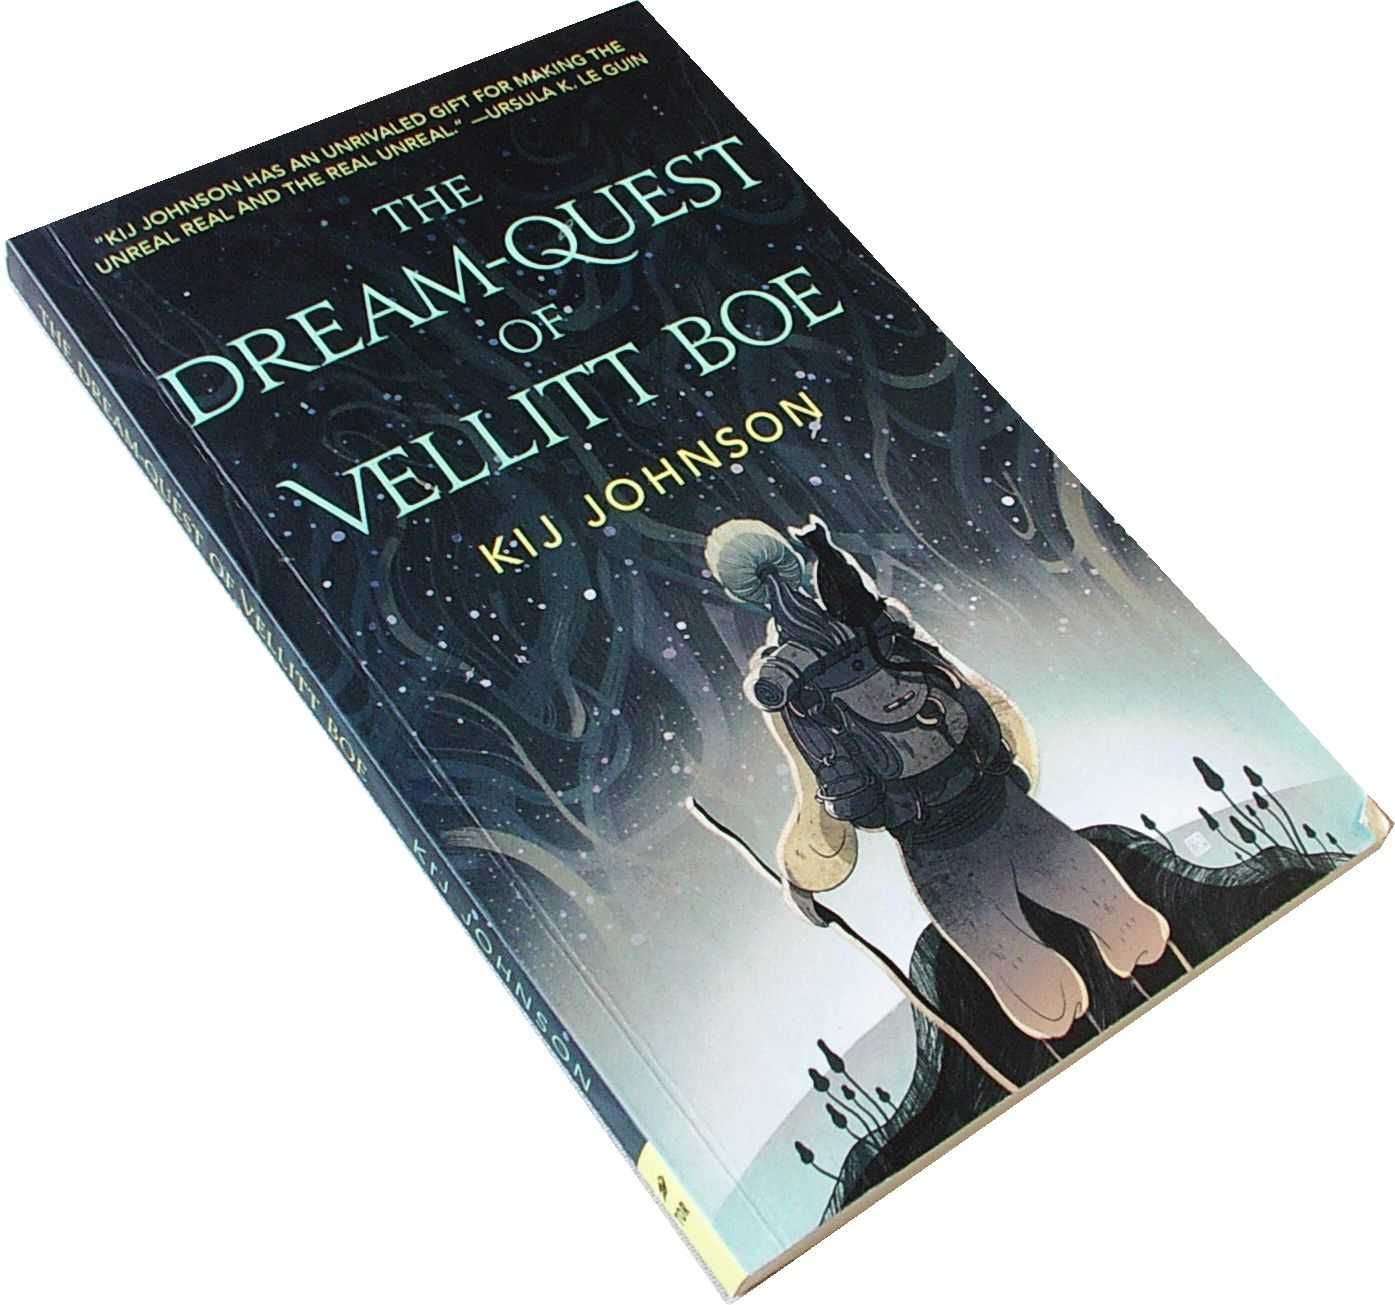 The Dream Quest Of Vellitt Boe - Kij Johnson